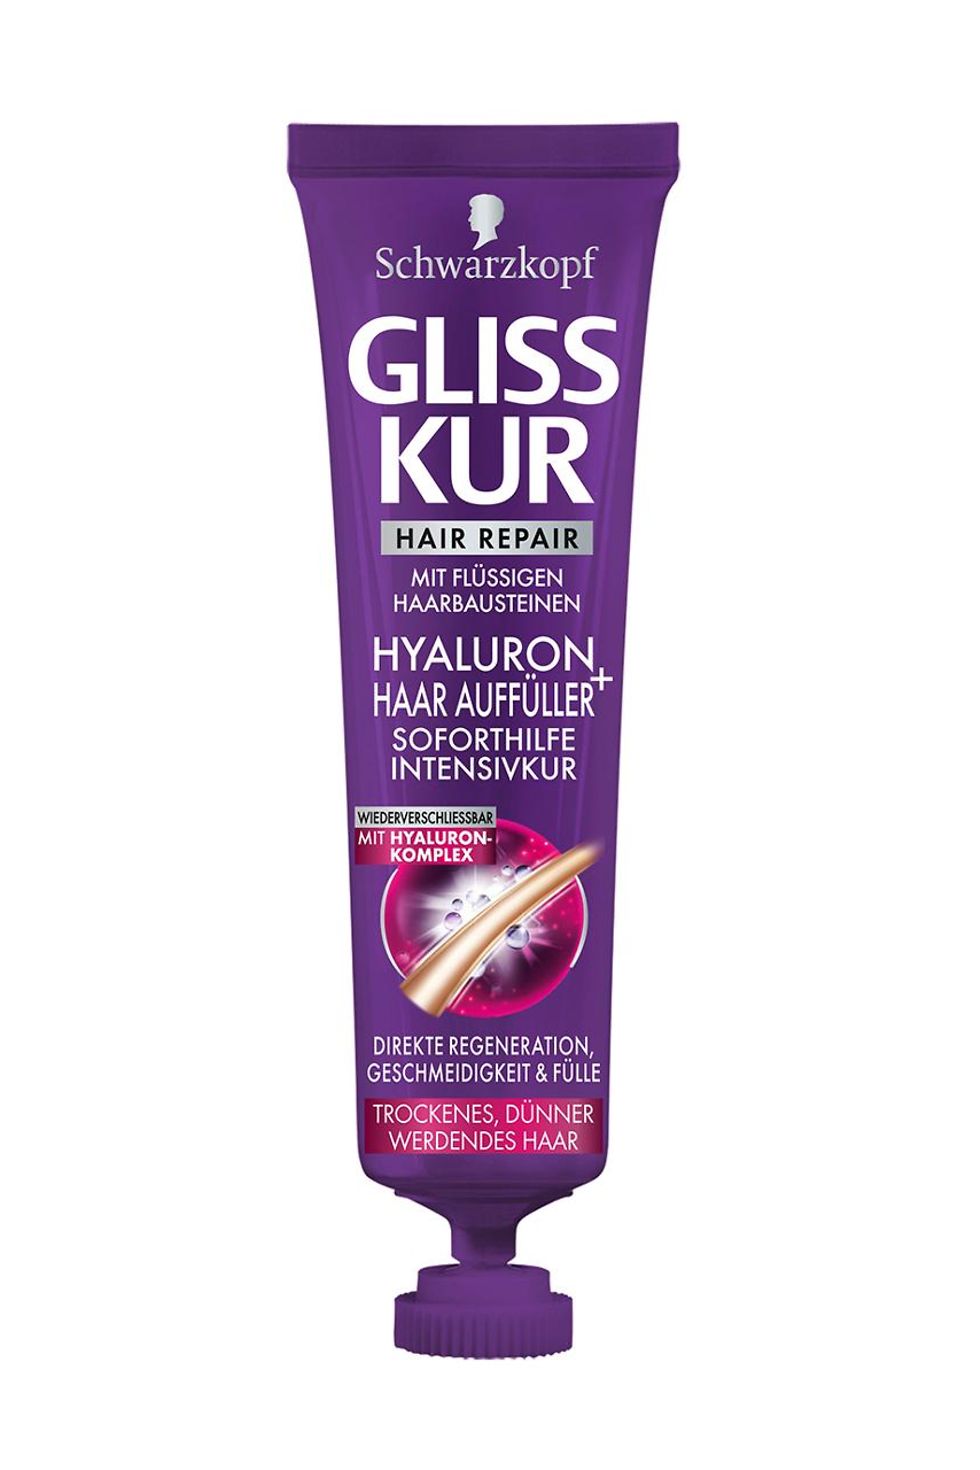  Gliss Kur Hyaluron + Haar Auffüller Soforthilfe Intensivkur